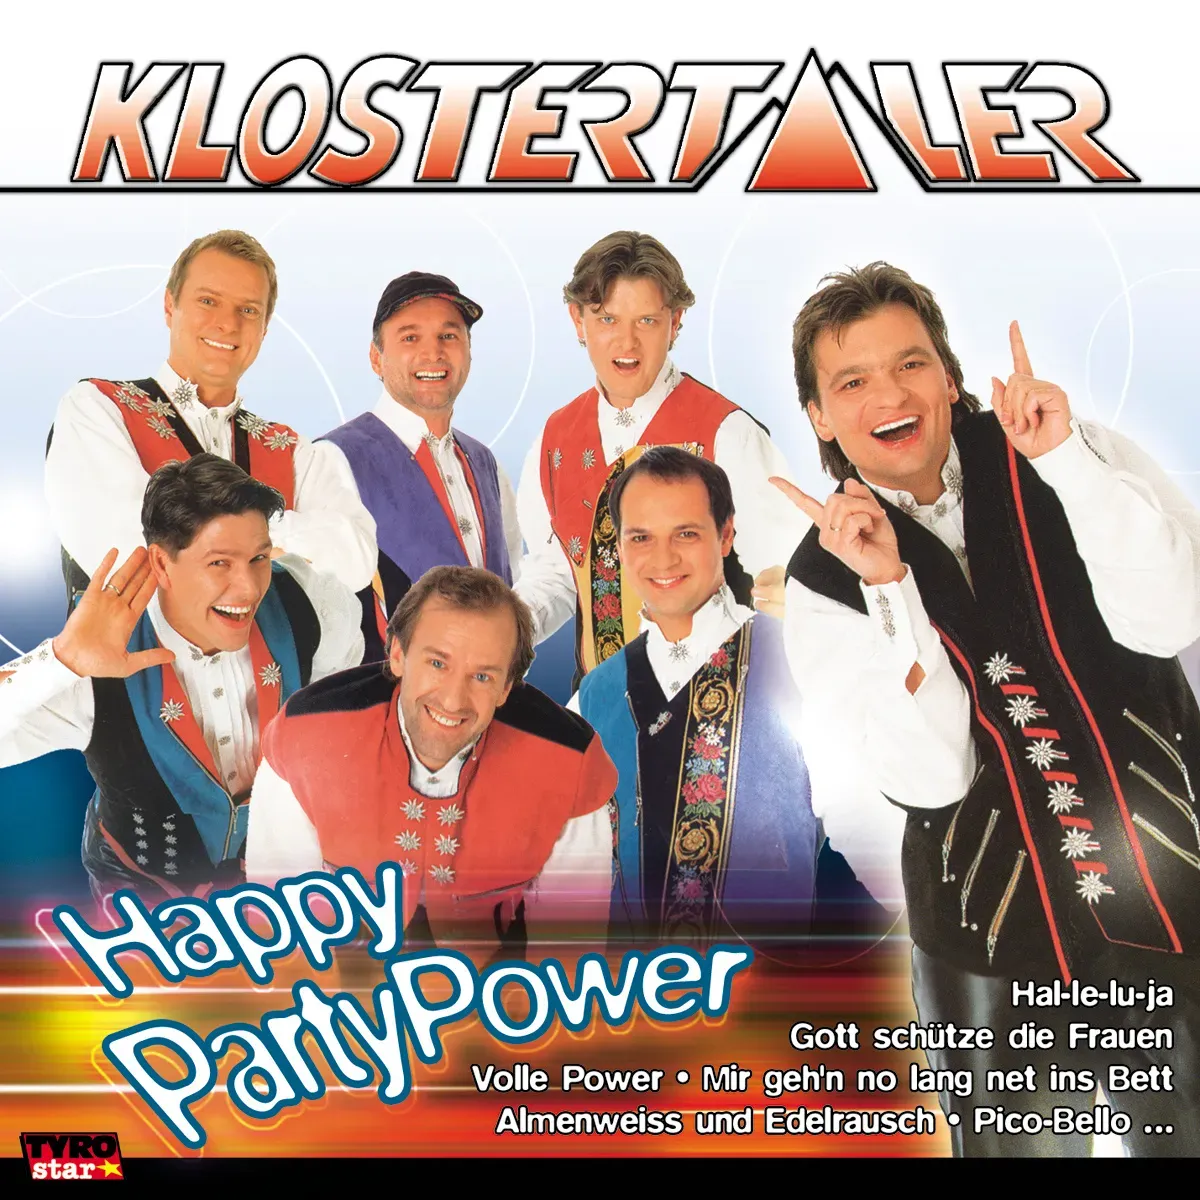 Happy Party Power - Klostertaler. (CD)